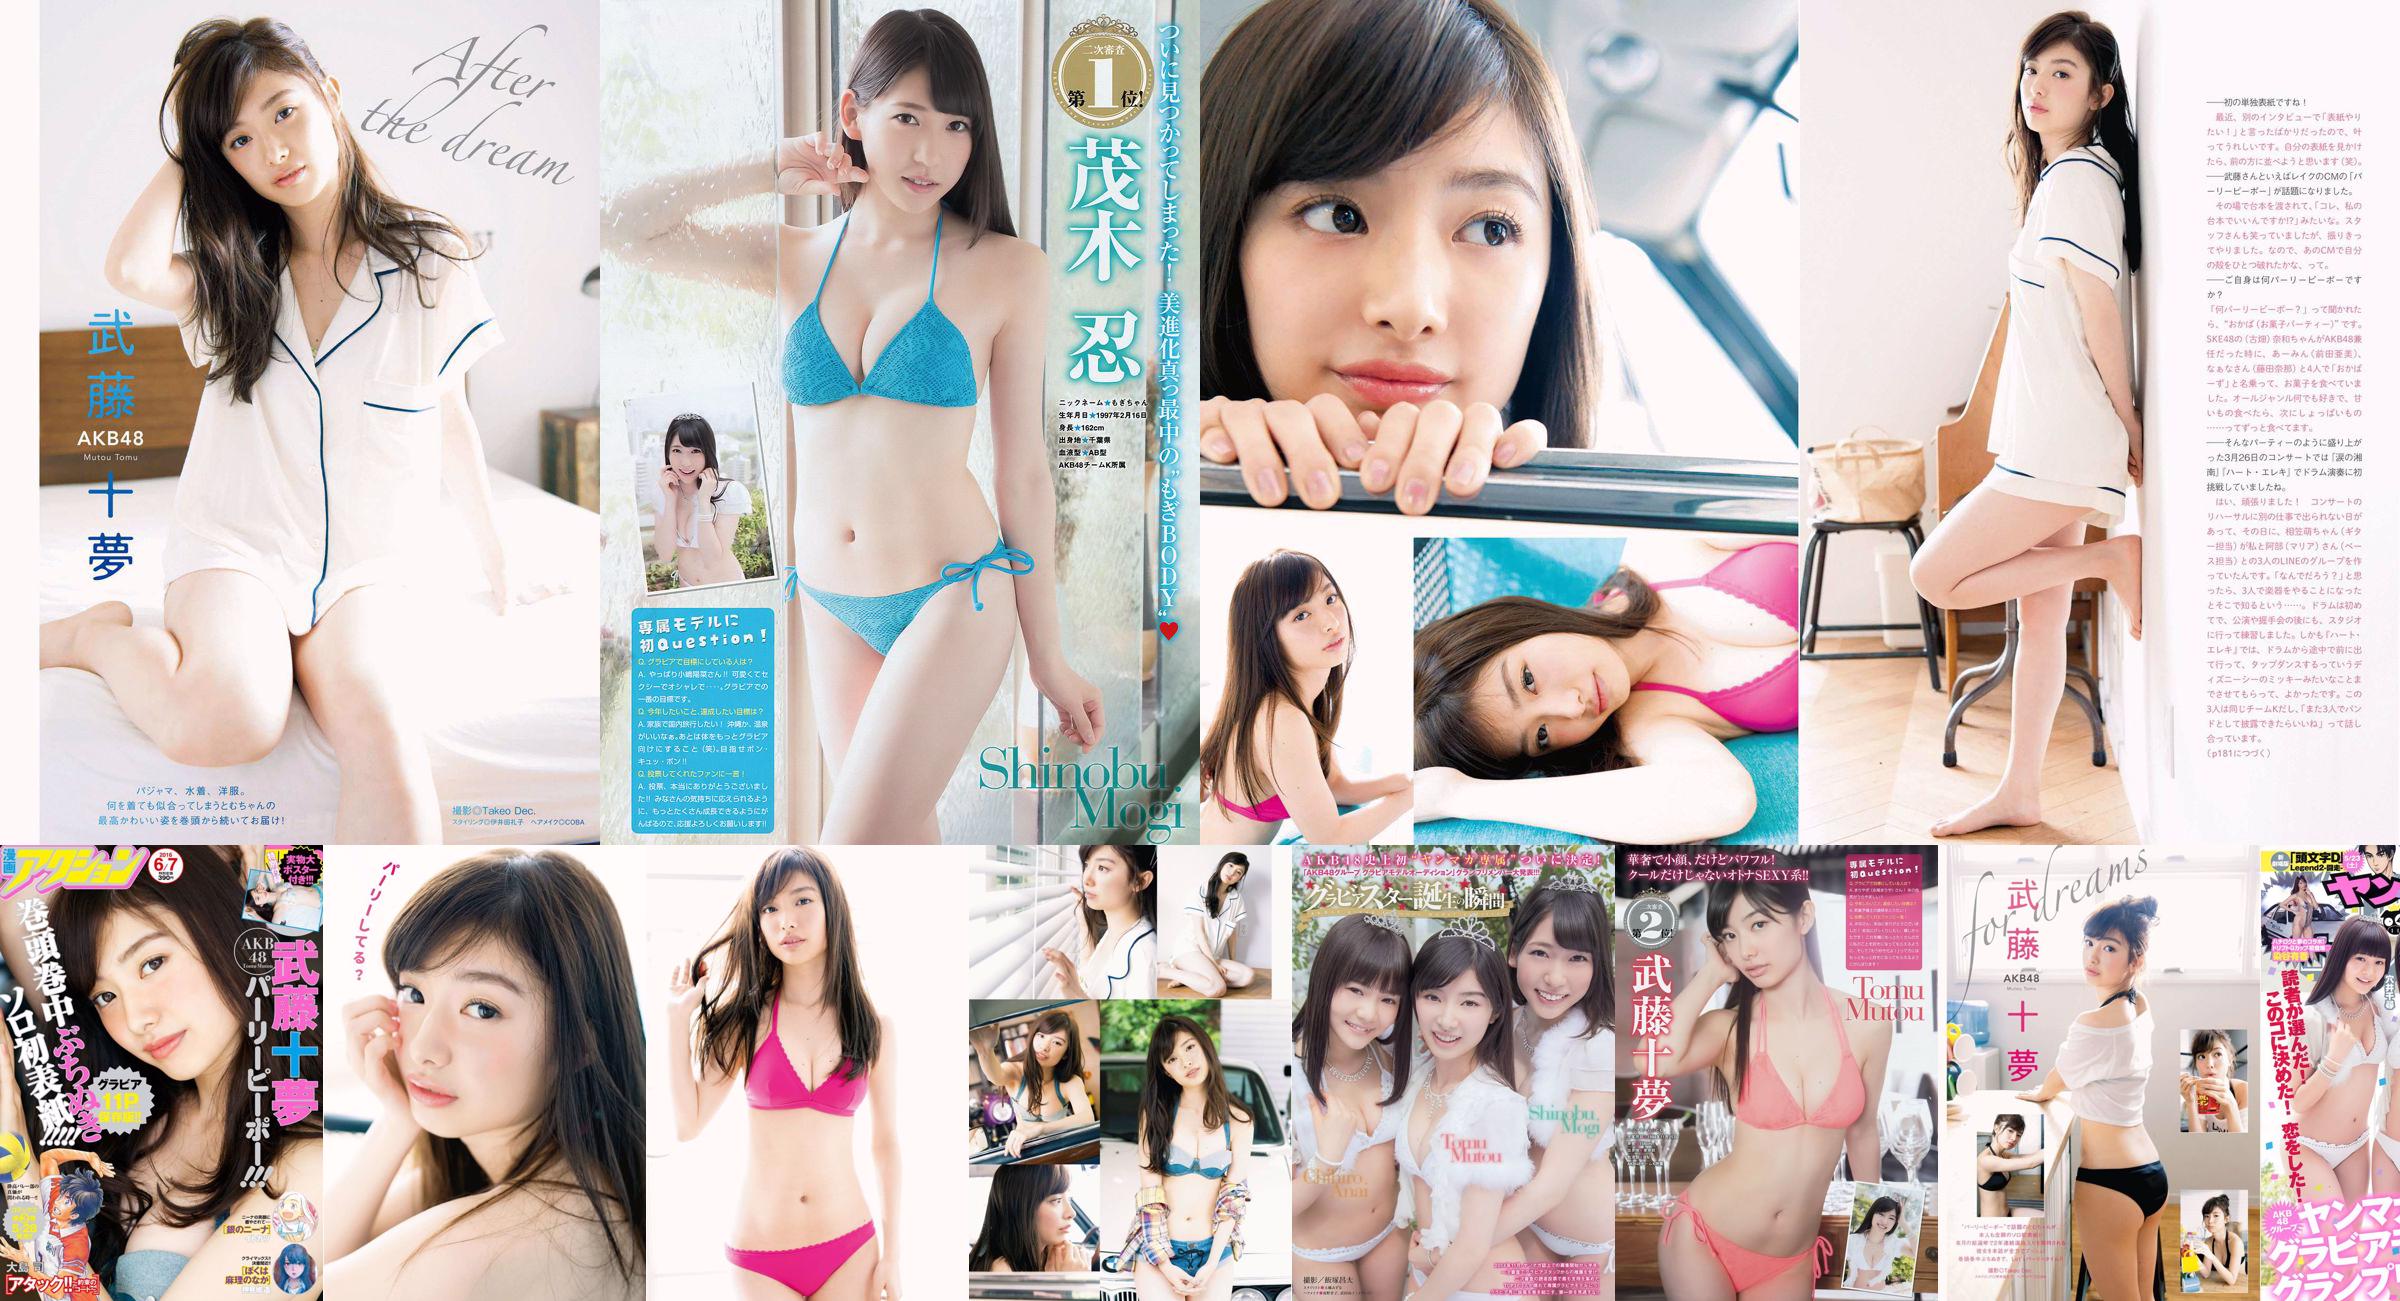 [Young Magazine] Tomu Muto Shinobu Mogi Chihiro Anai Erina Mano Yuka Someya 2015 Photographie n ° 25 No.a44c8a Page 1